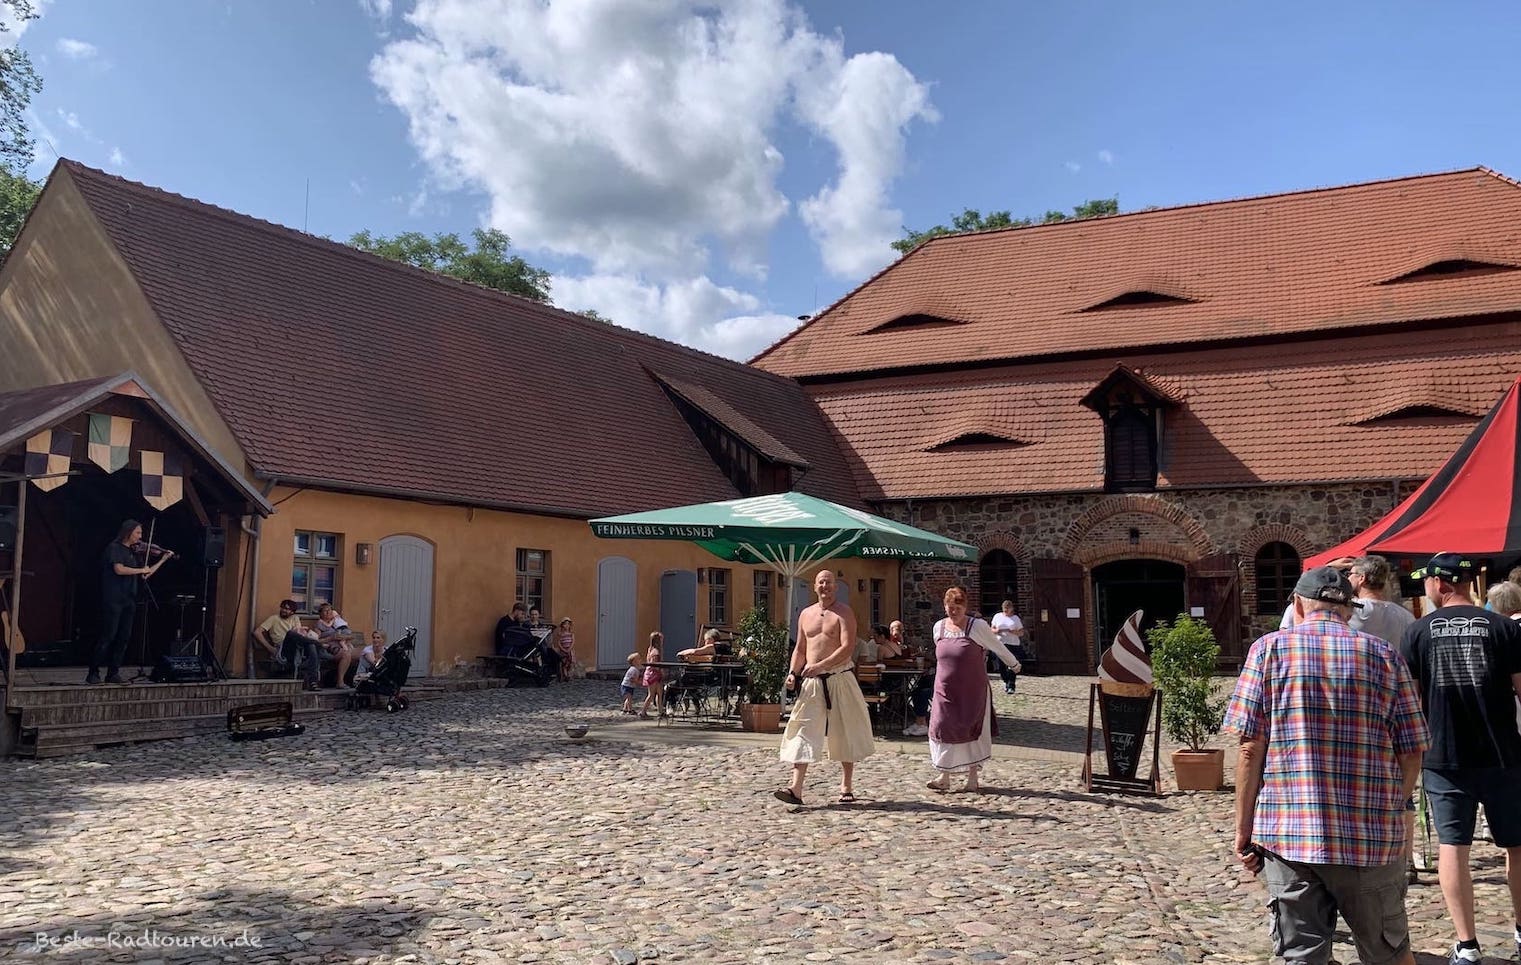 Gastronomie im Burghof von Burg Rabenstein: Imbiss-Stand, Biergarten, Bühne mit Musiker und Personal in mittelalterlicher Bekleidung